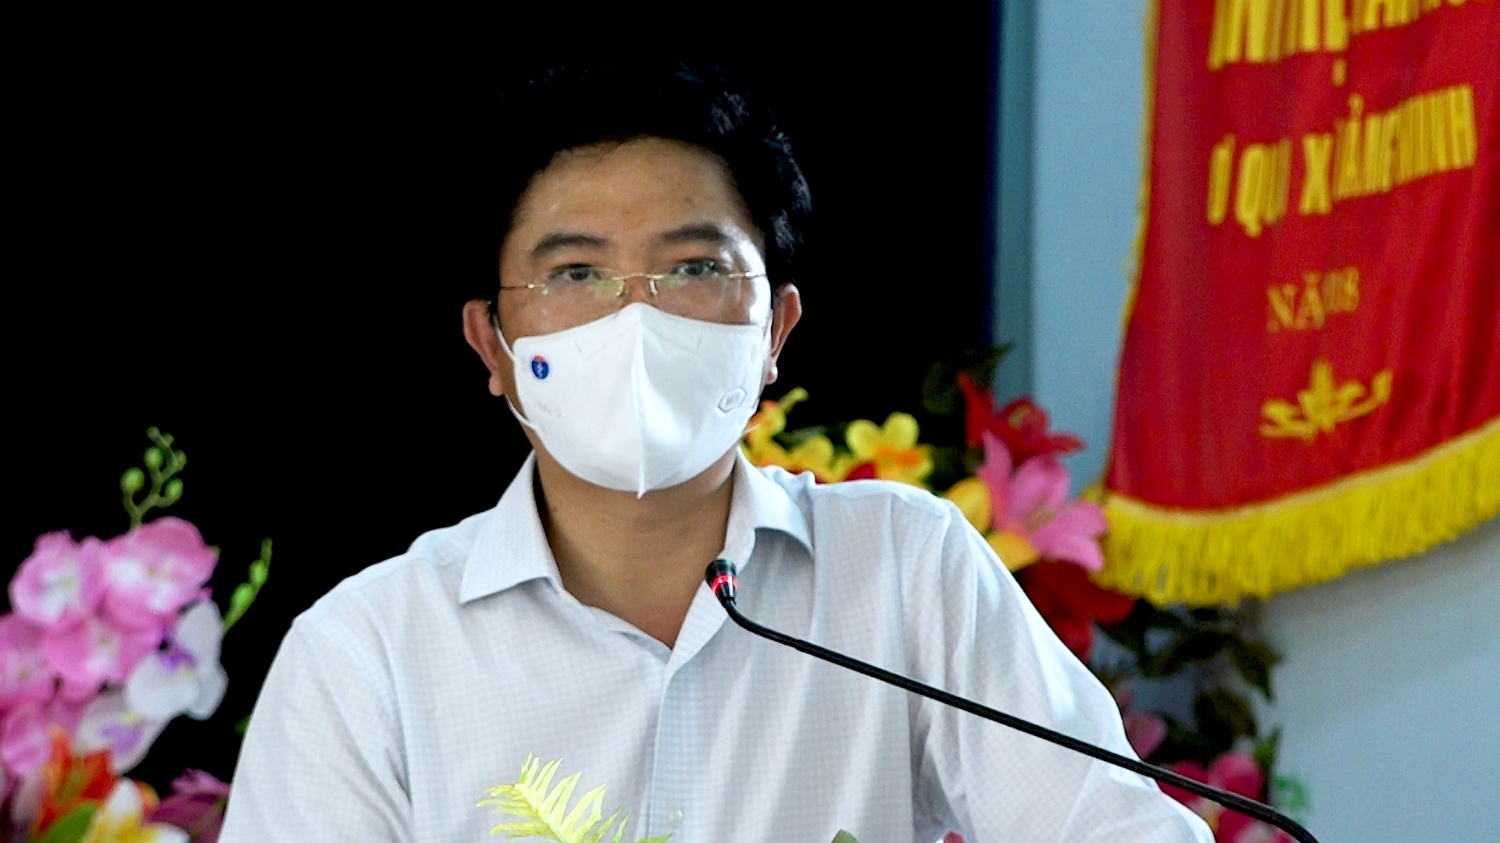 Ông Trương An Ninh, Ủy viên Ban Thường vụ Tỉnh ủy, Bí thư Thị ủy Ba Đồn trình bày chương trình hành động trước cử tri thị xã Ba Đồn (1)